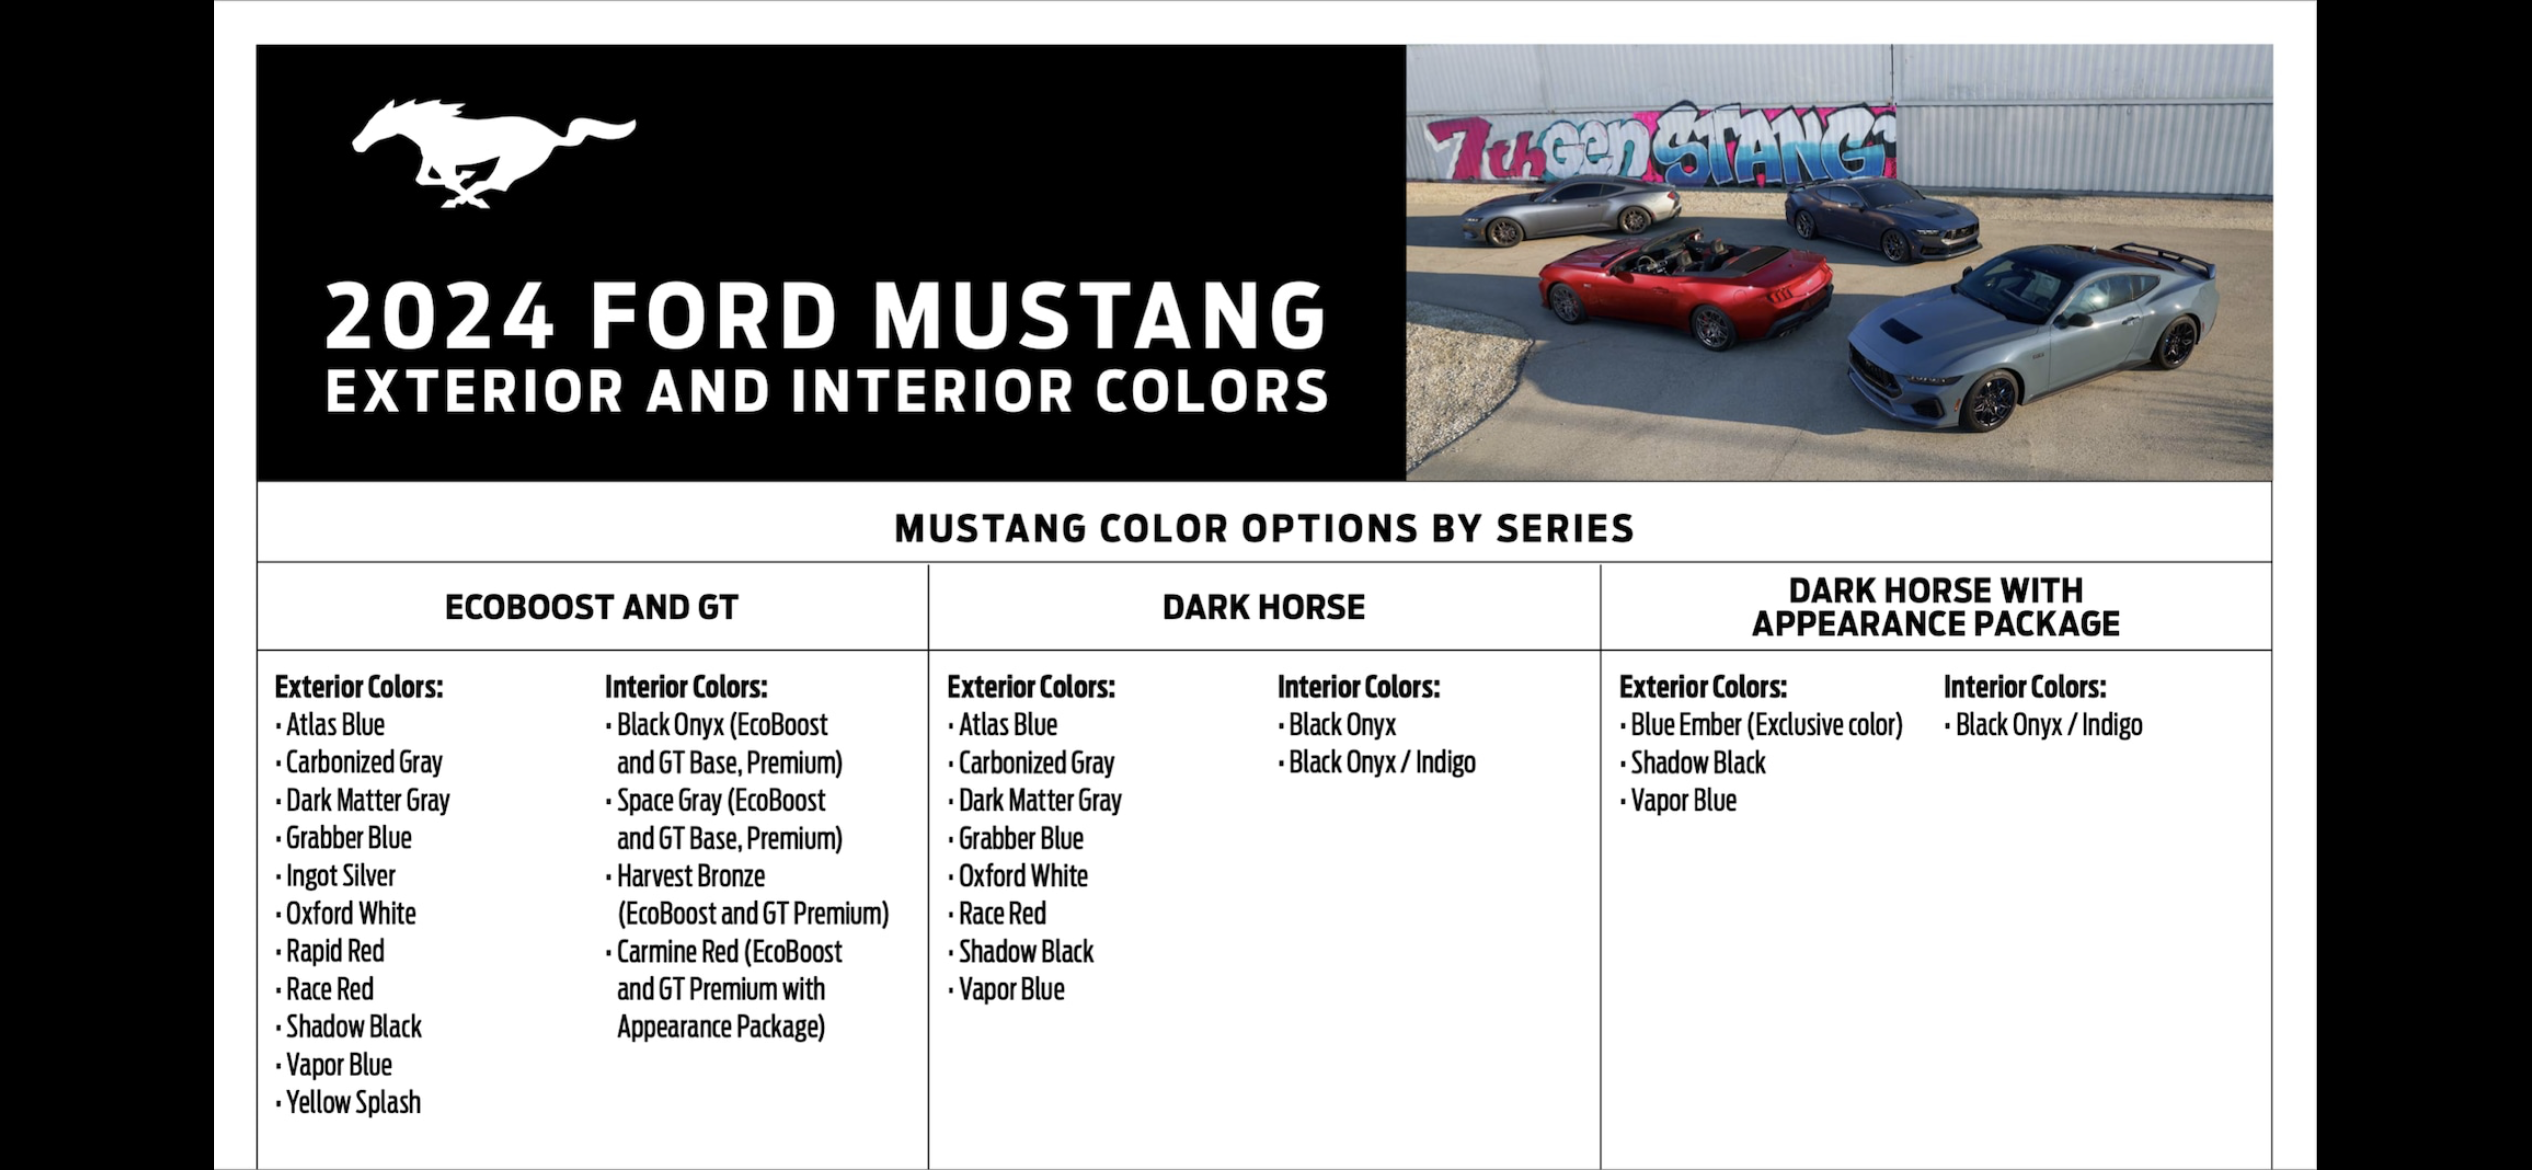 S650 Mustang Official DARK MATTER GRAY Mustang S650 Thread 428A4B23-BD5B-410E-9211-FF2D598F4394